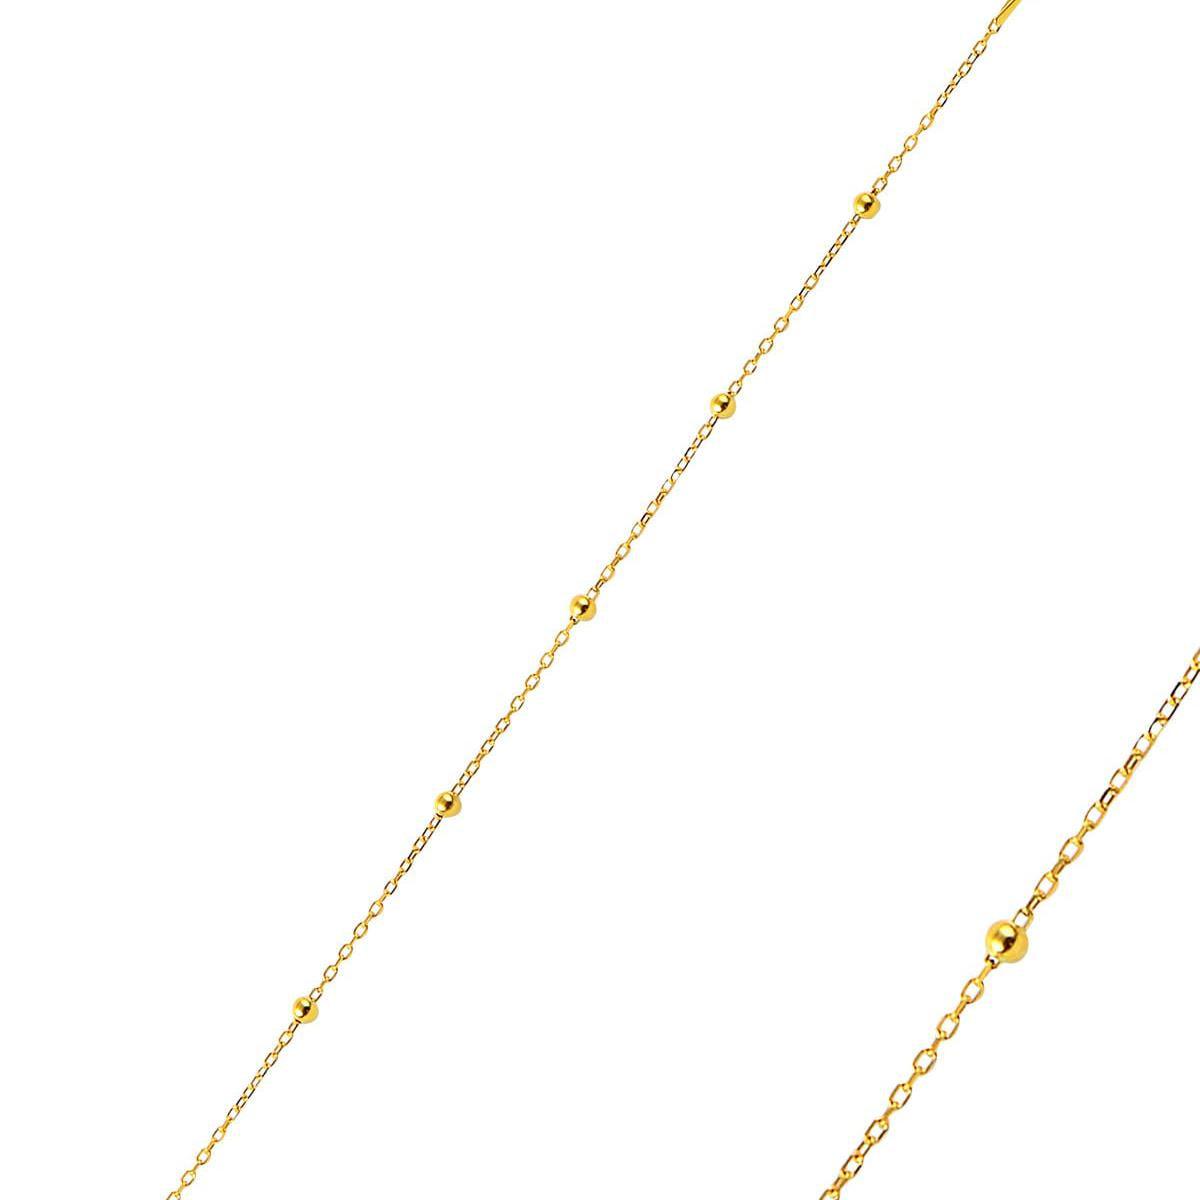 Gold Satellite Chain Bracelet • Dainty Satellite Chain Bracelet - Trending Silver Gifts